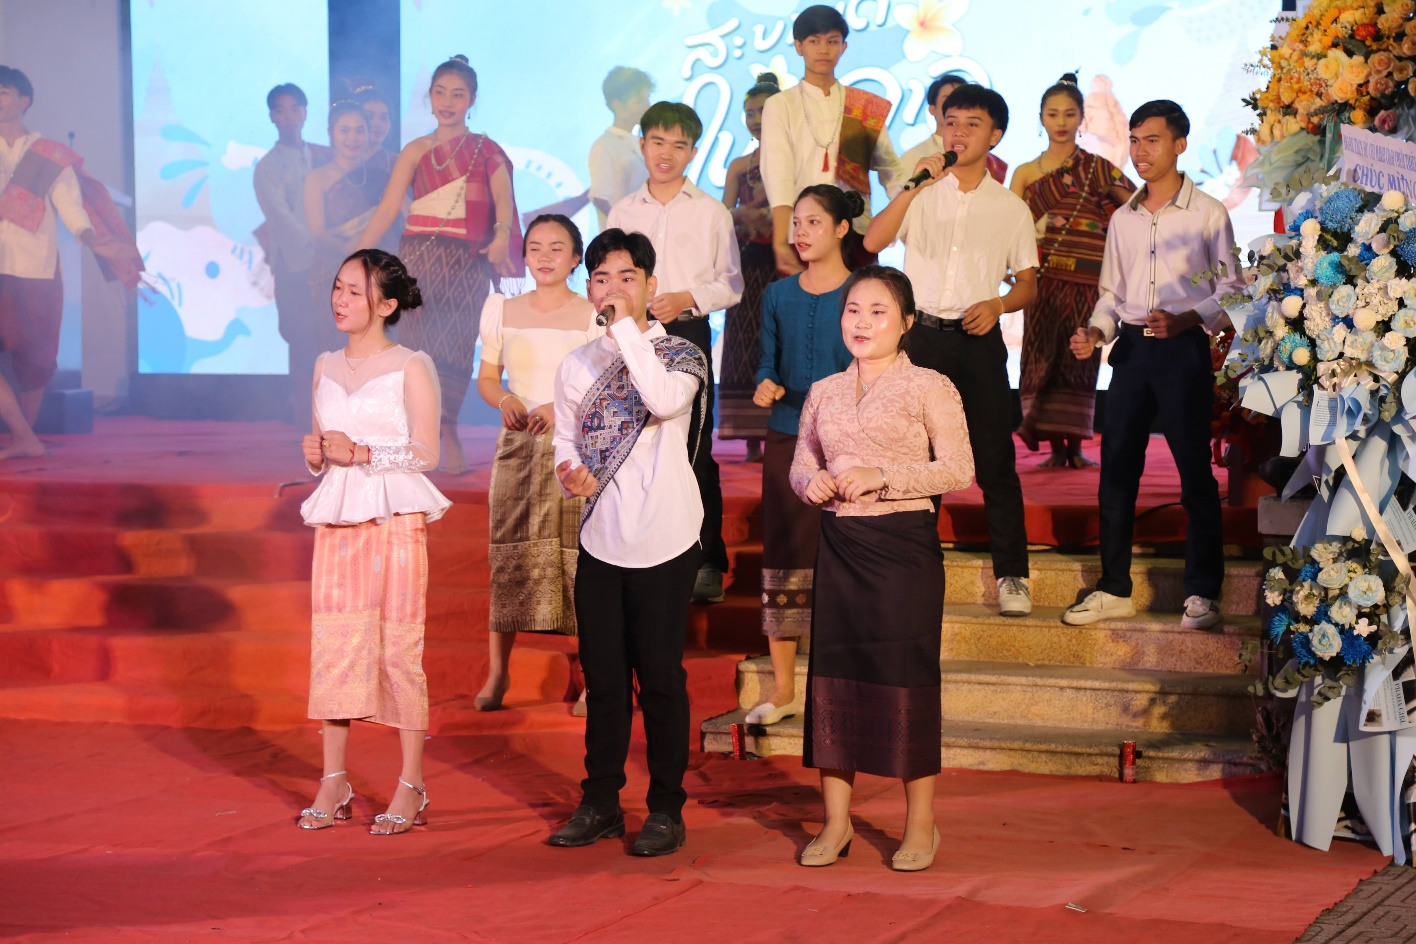 Lưu học sinh Lào đón Tết Bunpimay, buộc chỉ tay chúc nhau sức khỏe, may mắn - 5